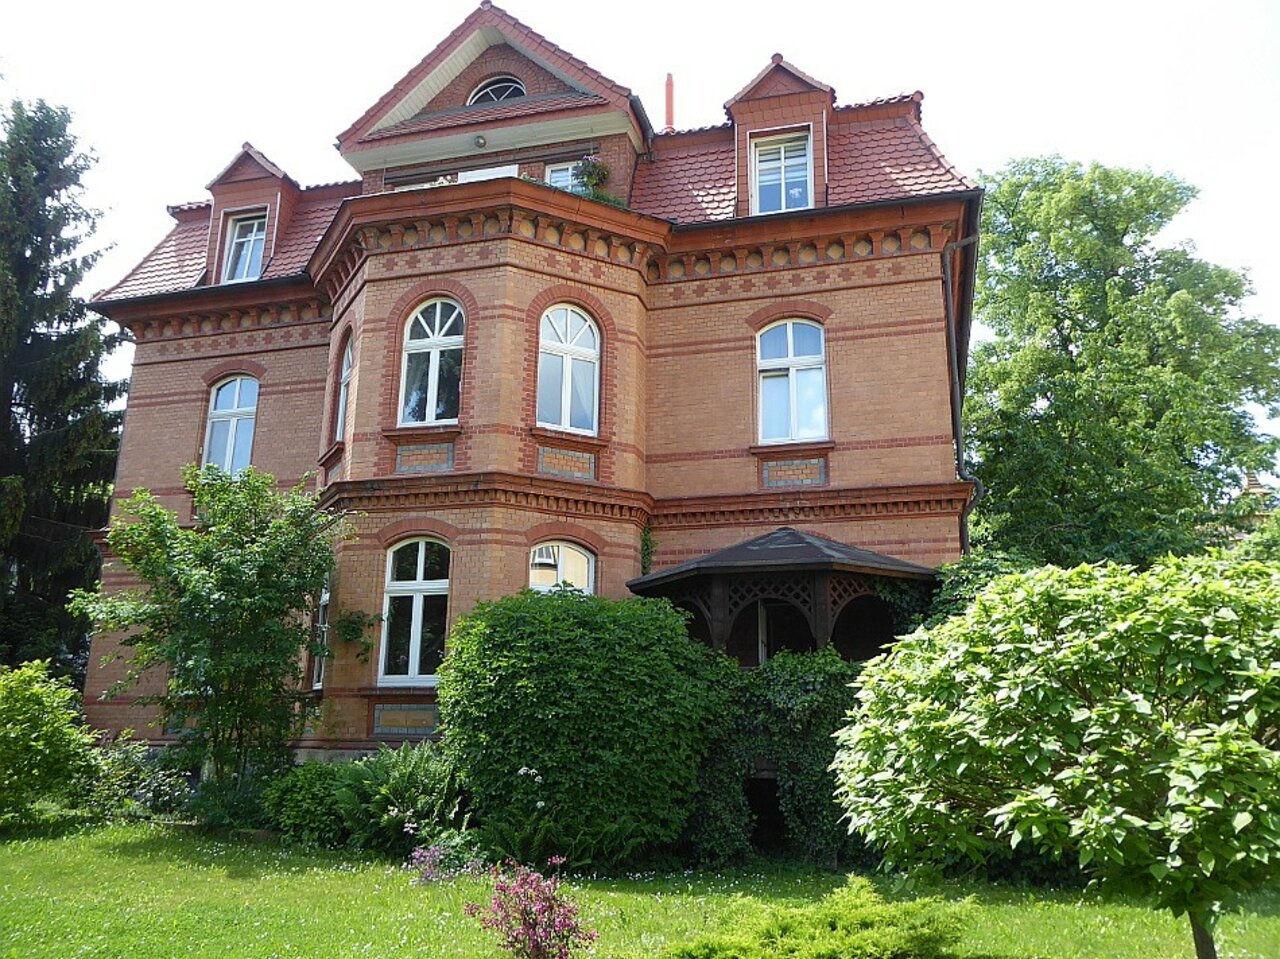 Großzügige Wohnung mit Gartennutzung nahe dem Stadtzentrum Arnstadts